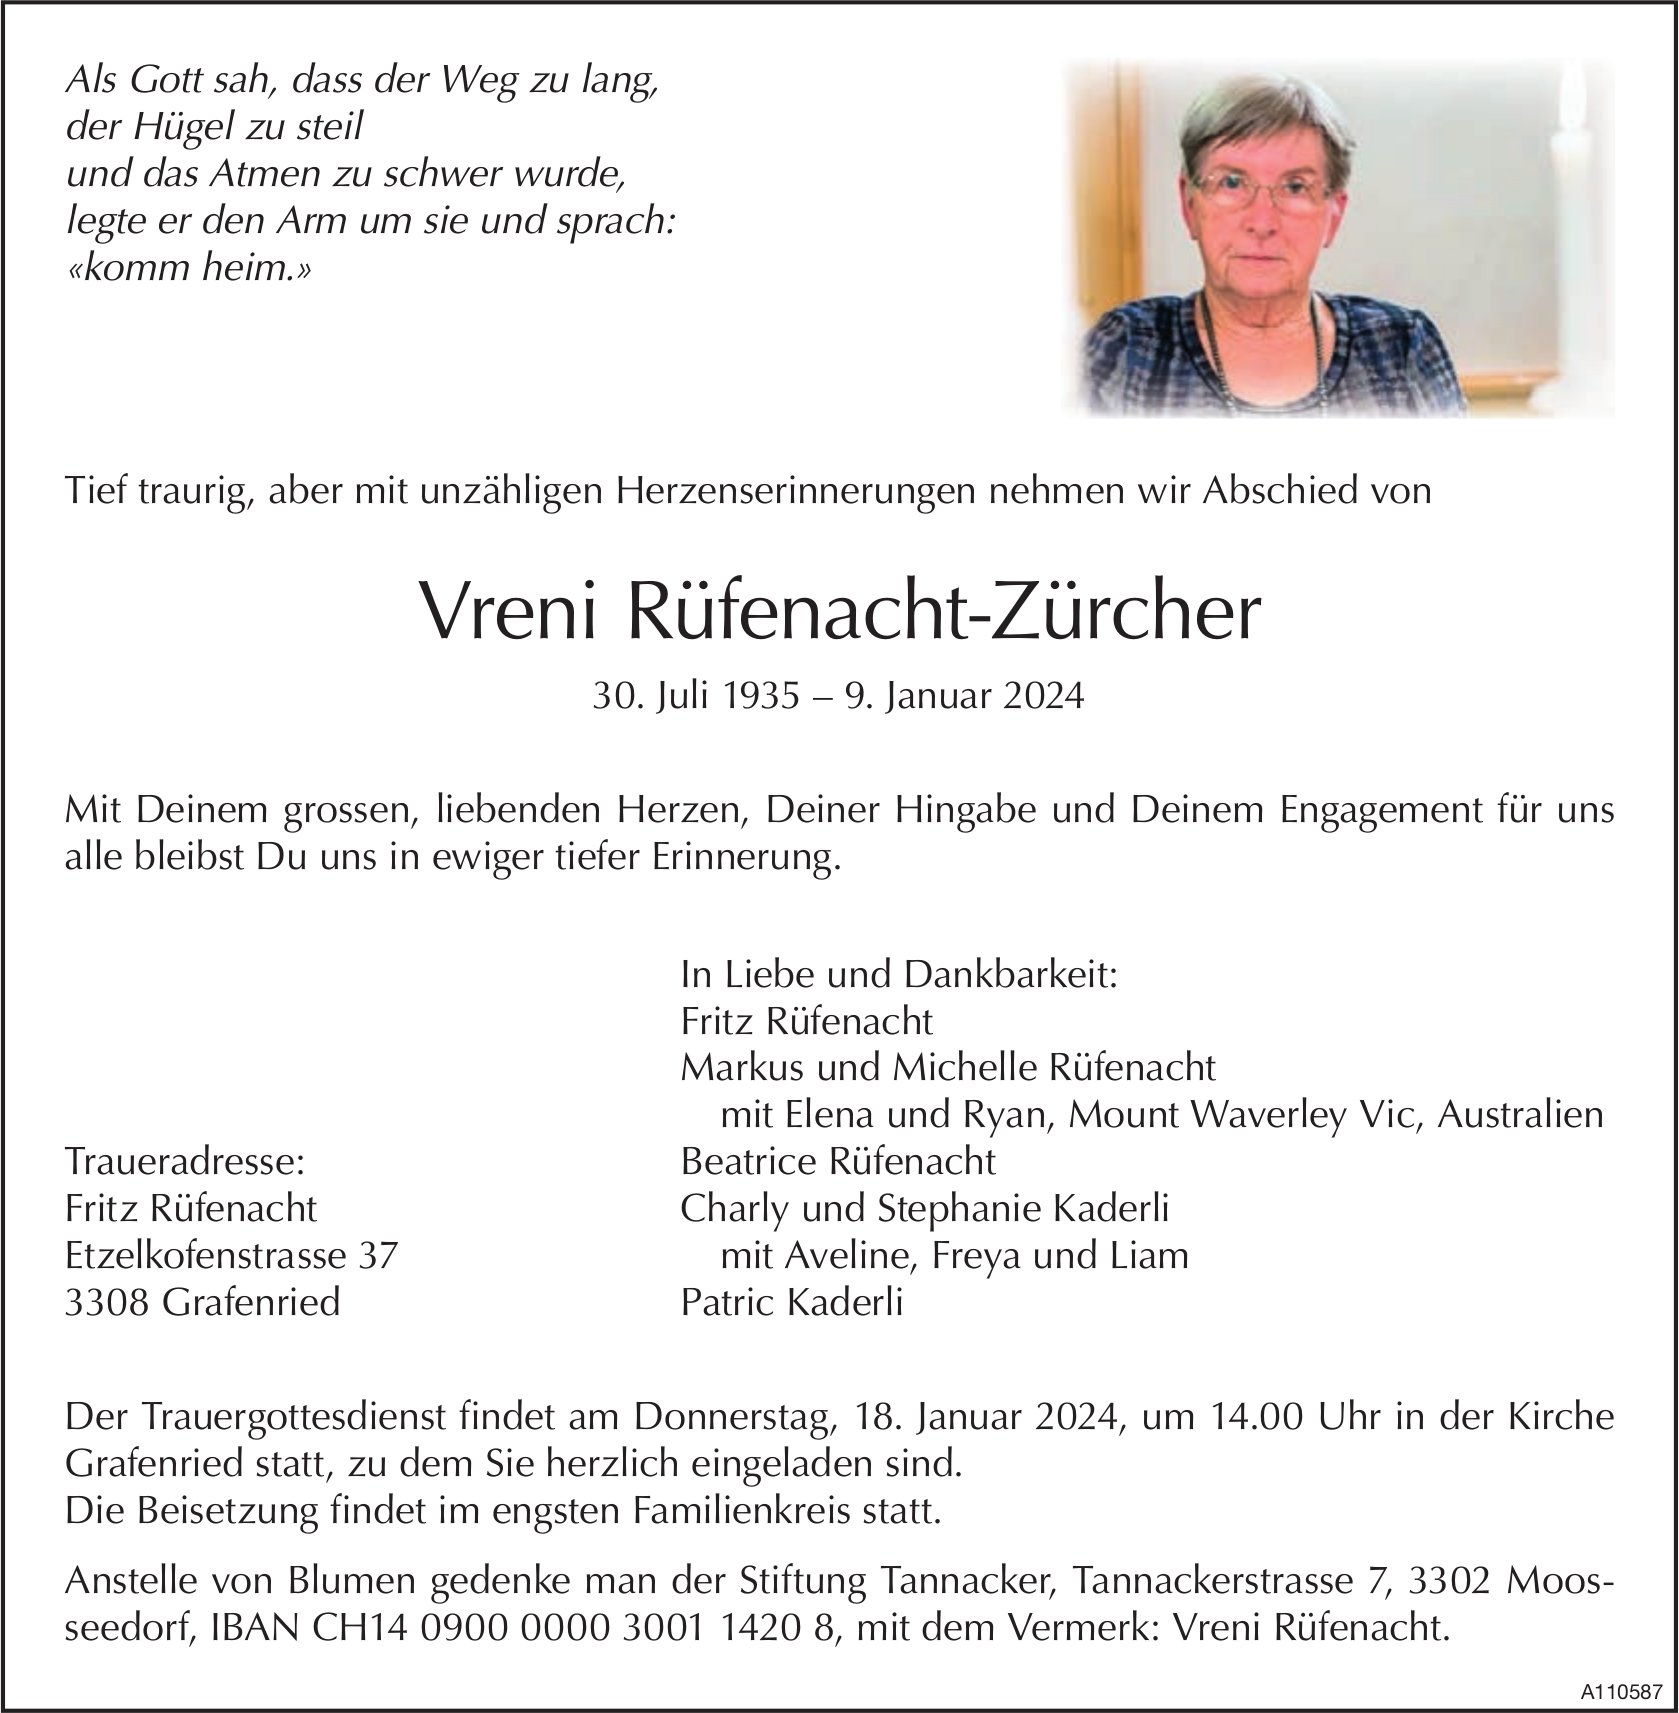 Vreni Rüfenacht-Zürcher, Januar 2024 / TA